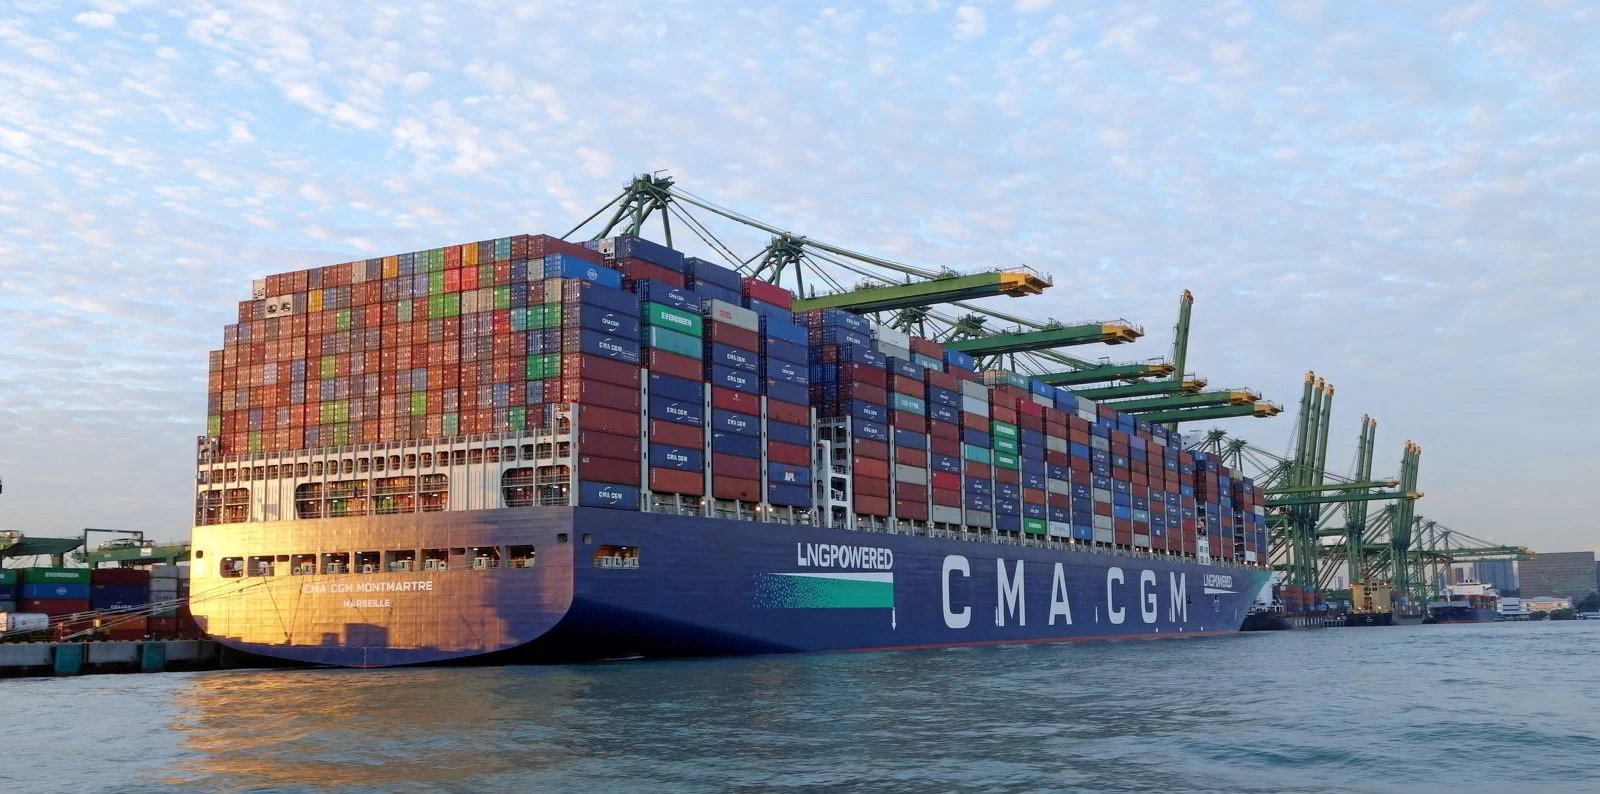 کشتیرانی CMA CGM نرخ حمل کانتینری خود را 100 درصد افزایش داد